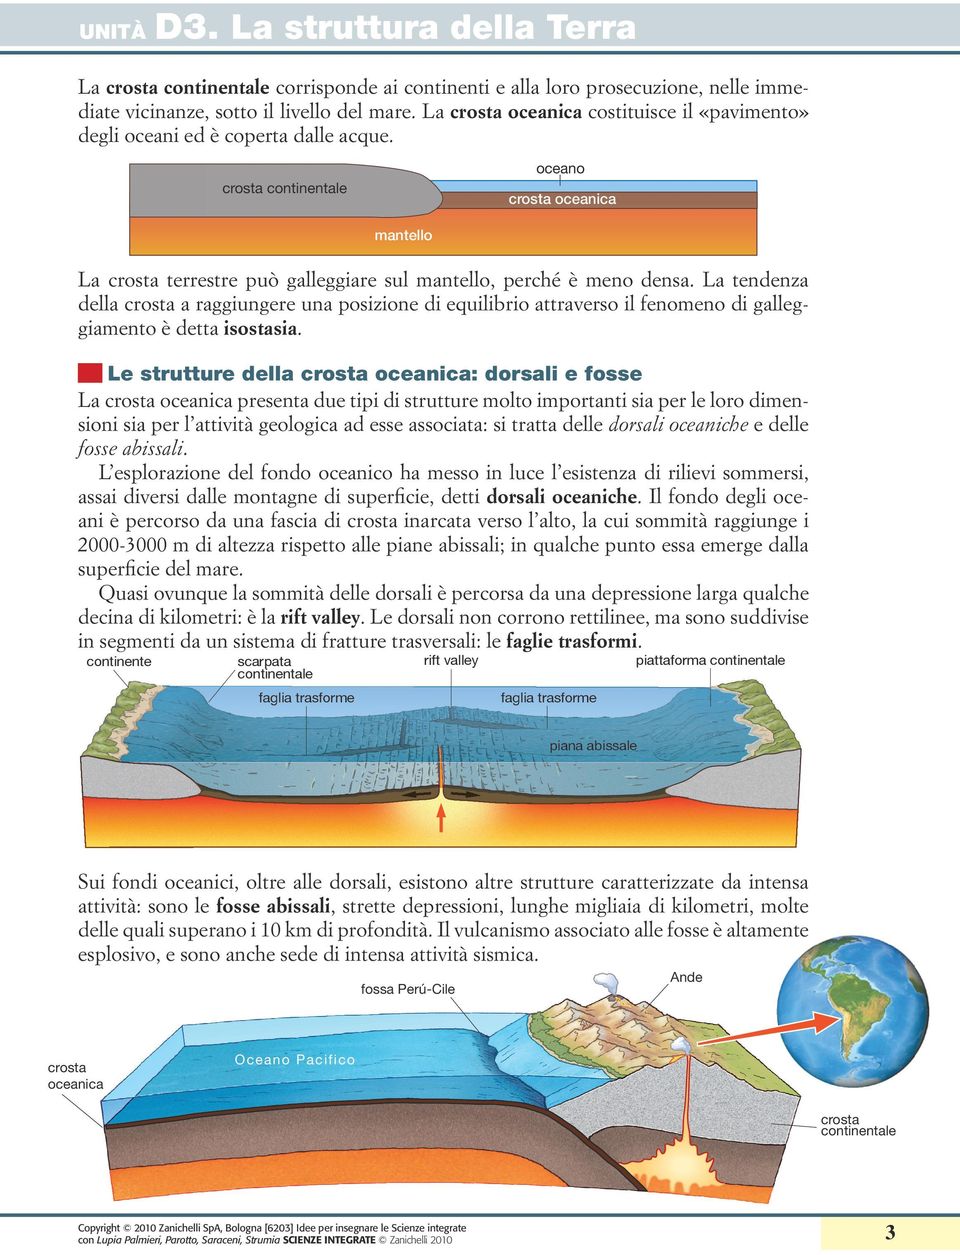 Le strutture della : dorsali e fosse La presenta due tipi di strutture molto importanti sia per le loro dimensioni sia per l attività geologica ad esse associata: si tratta delle dorsali oceaniche e